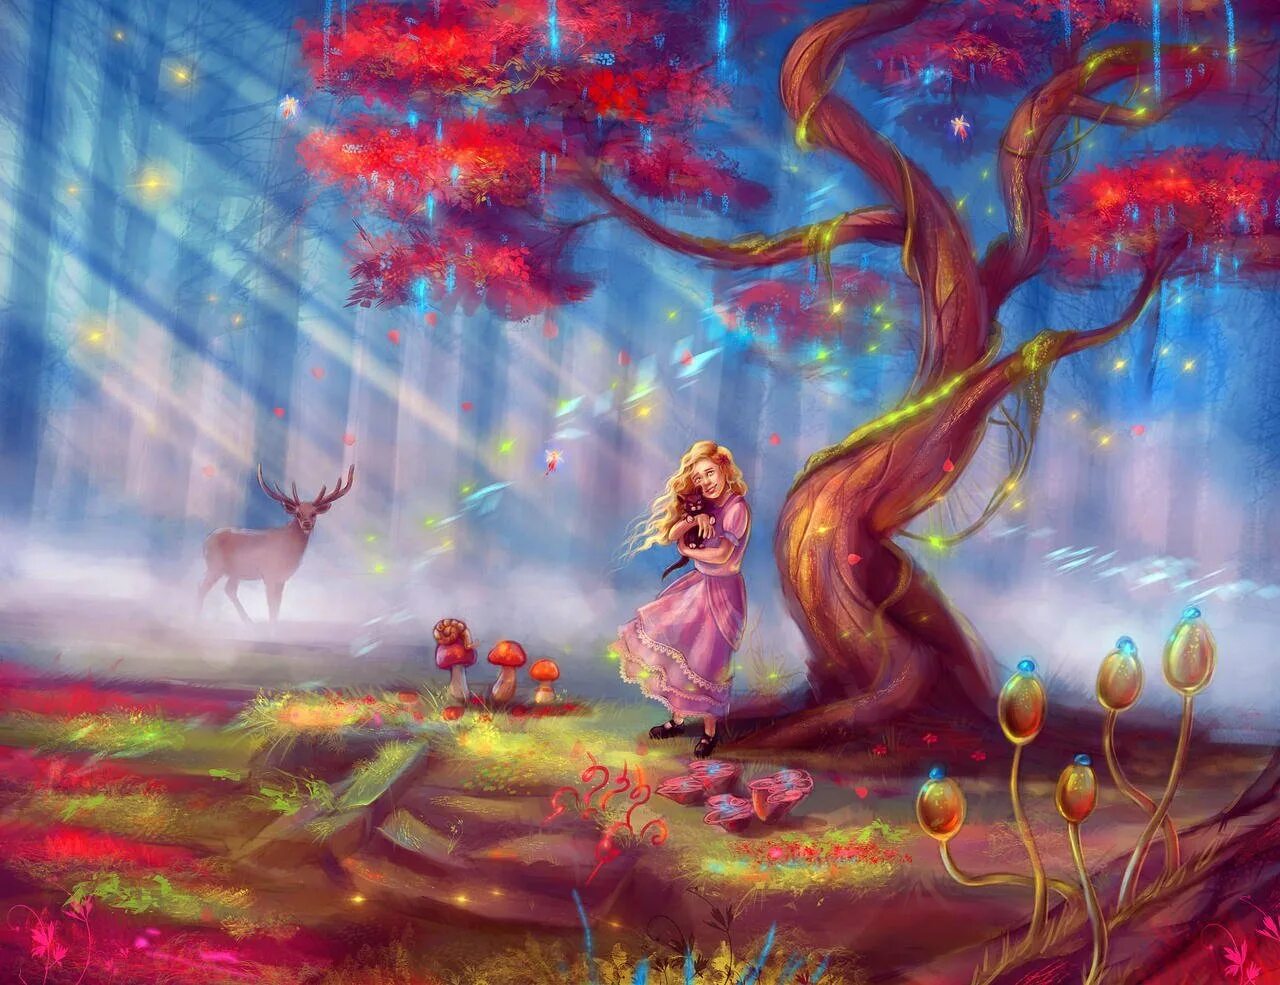 Чудесные картинки. Волшебные картинки. Сказочное волшебство. Волшебство в картинках. Девочка в сказочном лесу.